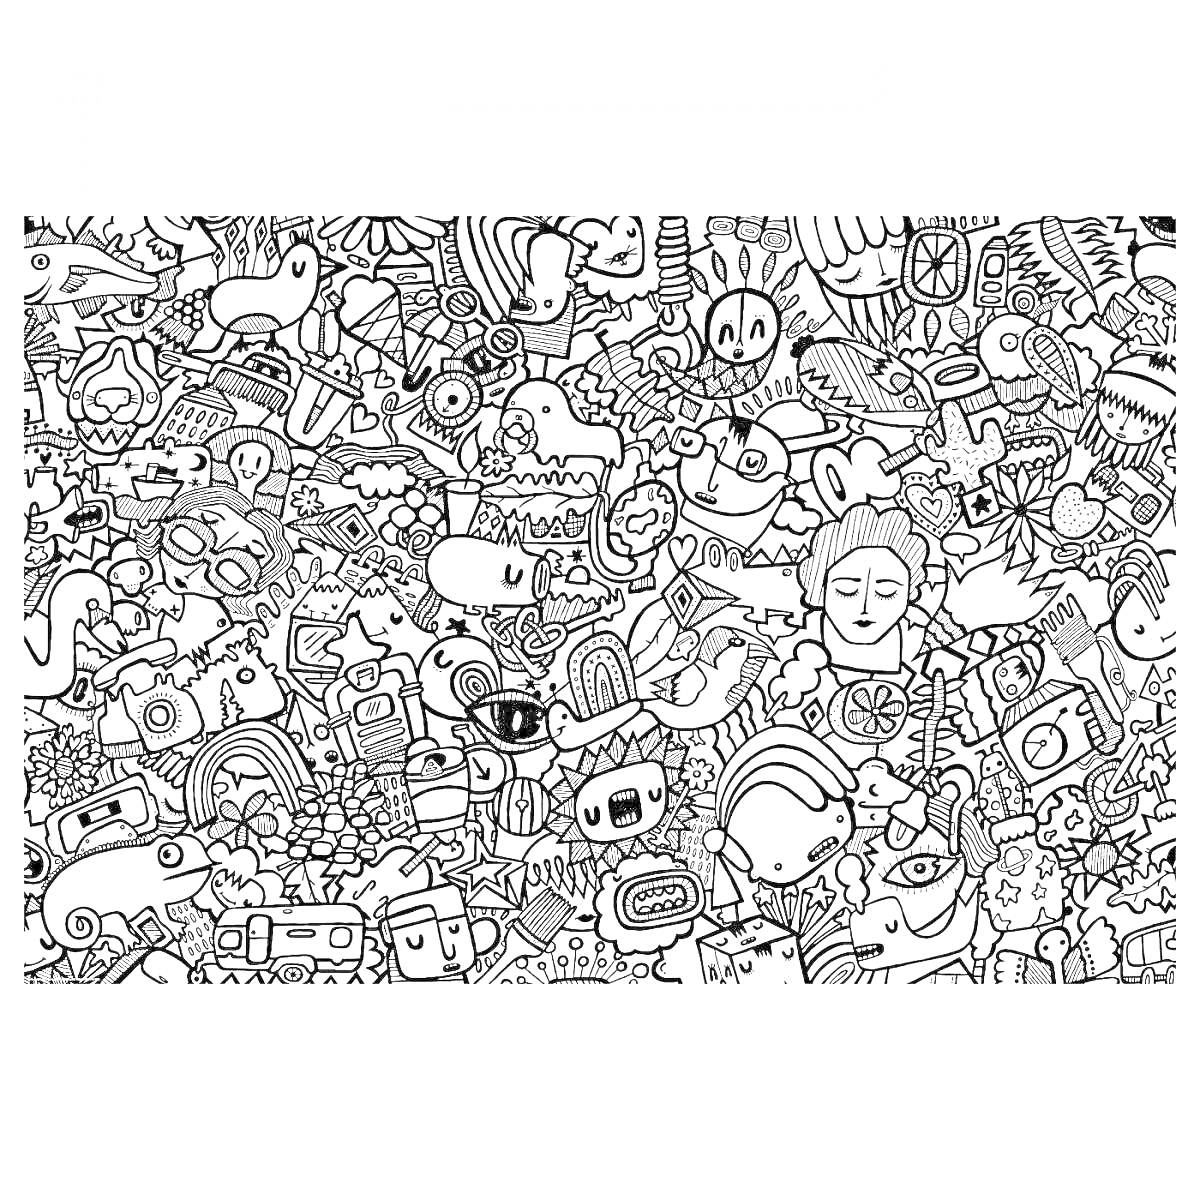 Раскраска Икеа с разнообразными элементами, такими как животные, еда, растения, персонажи